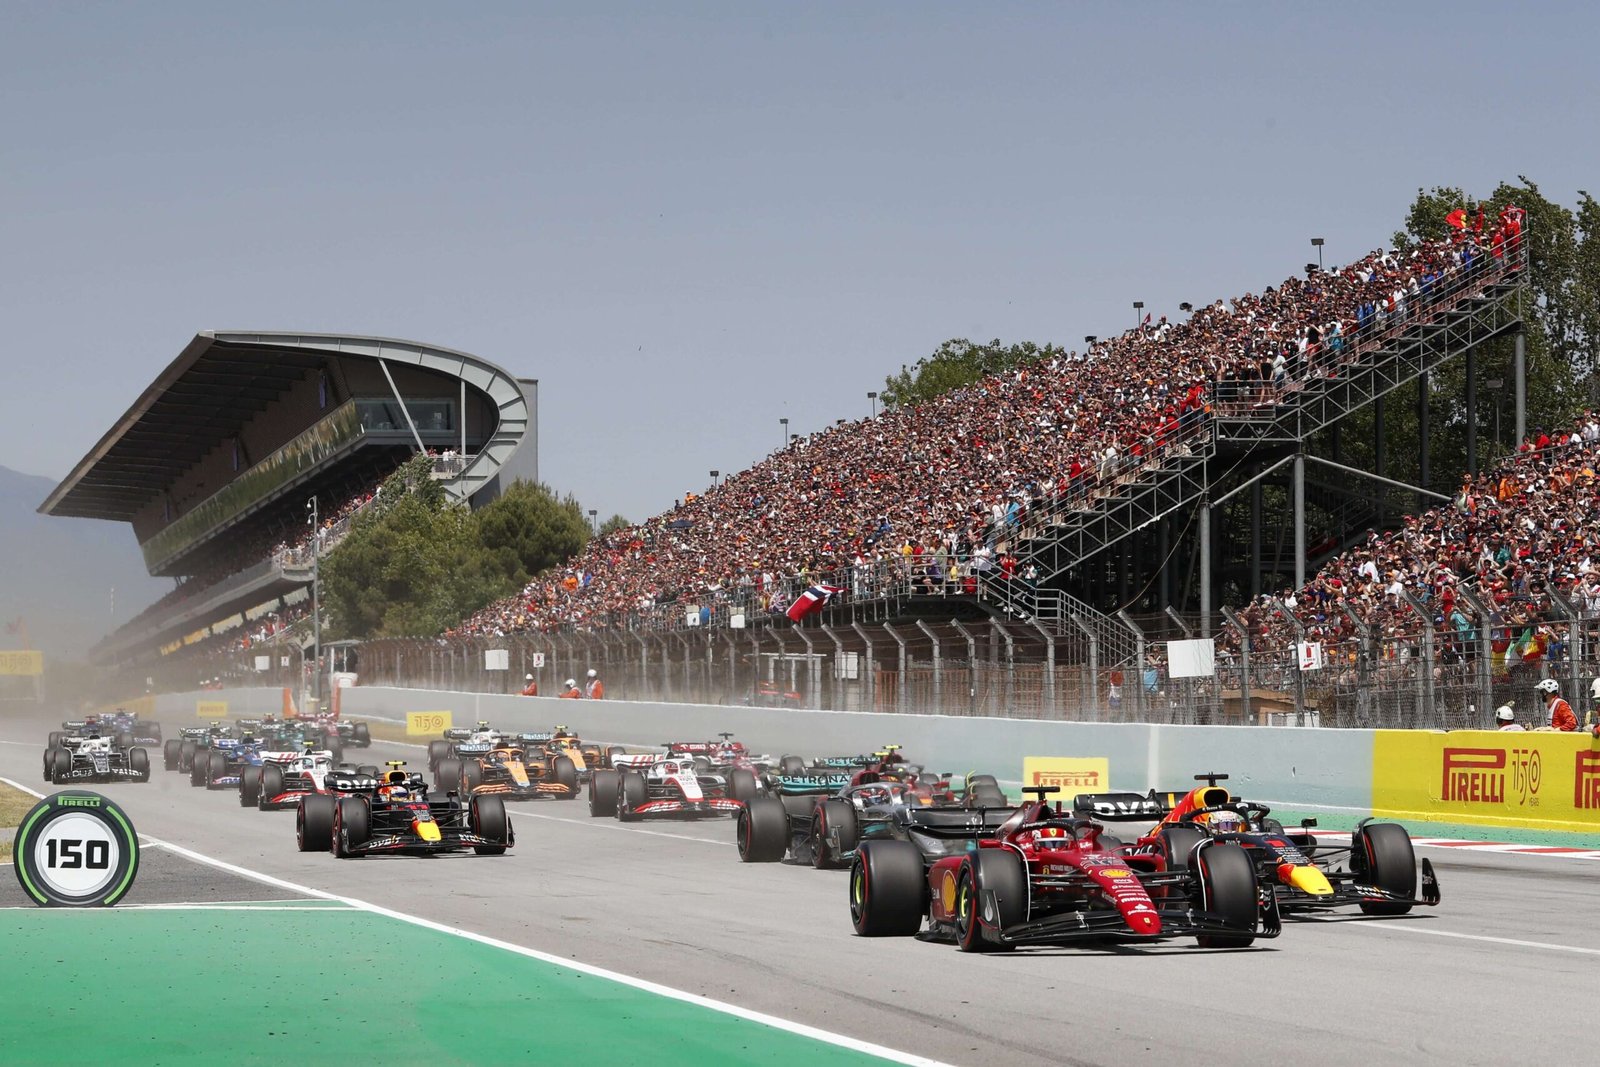 Preview do GP da Espanha – Uma das pistas mais exploradas pelas equipes de Fórmula 1